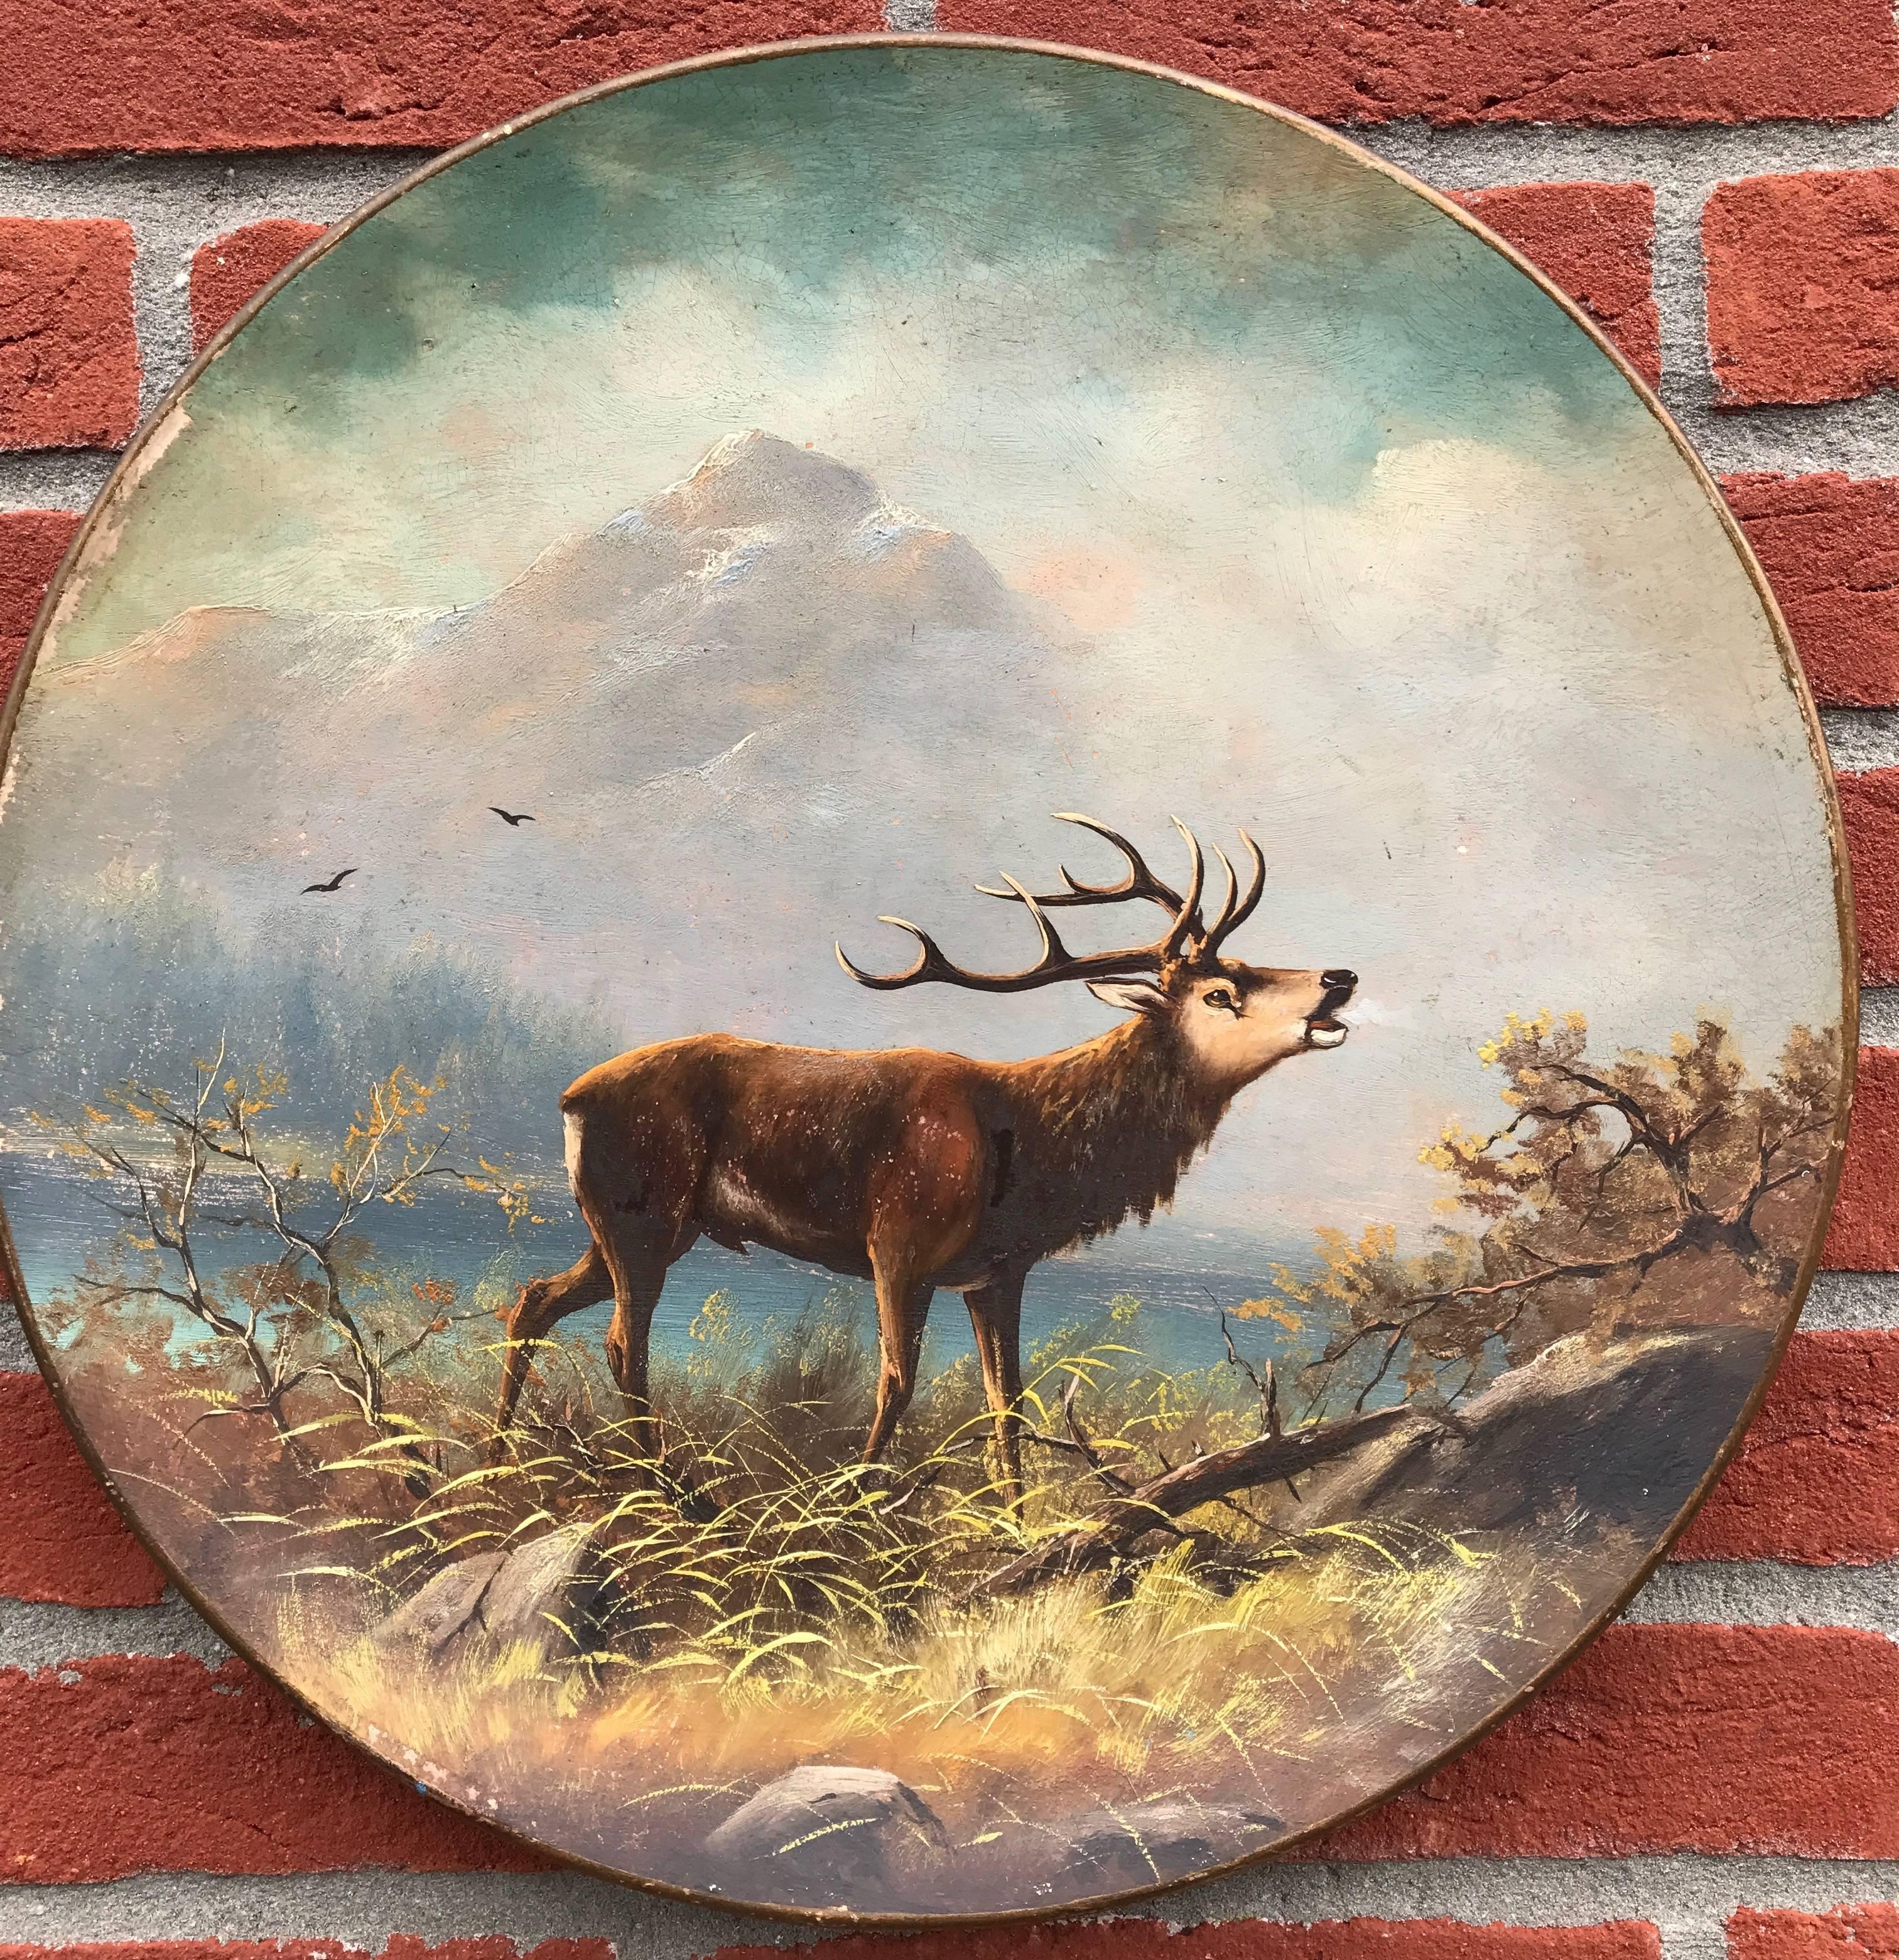 deer plates